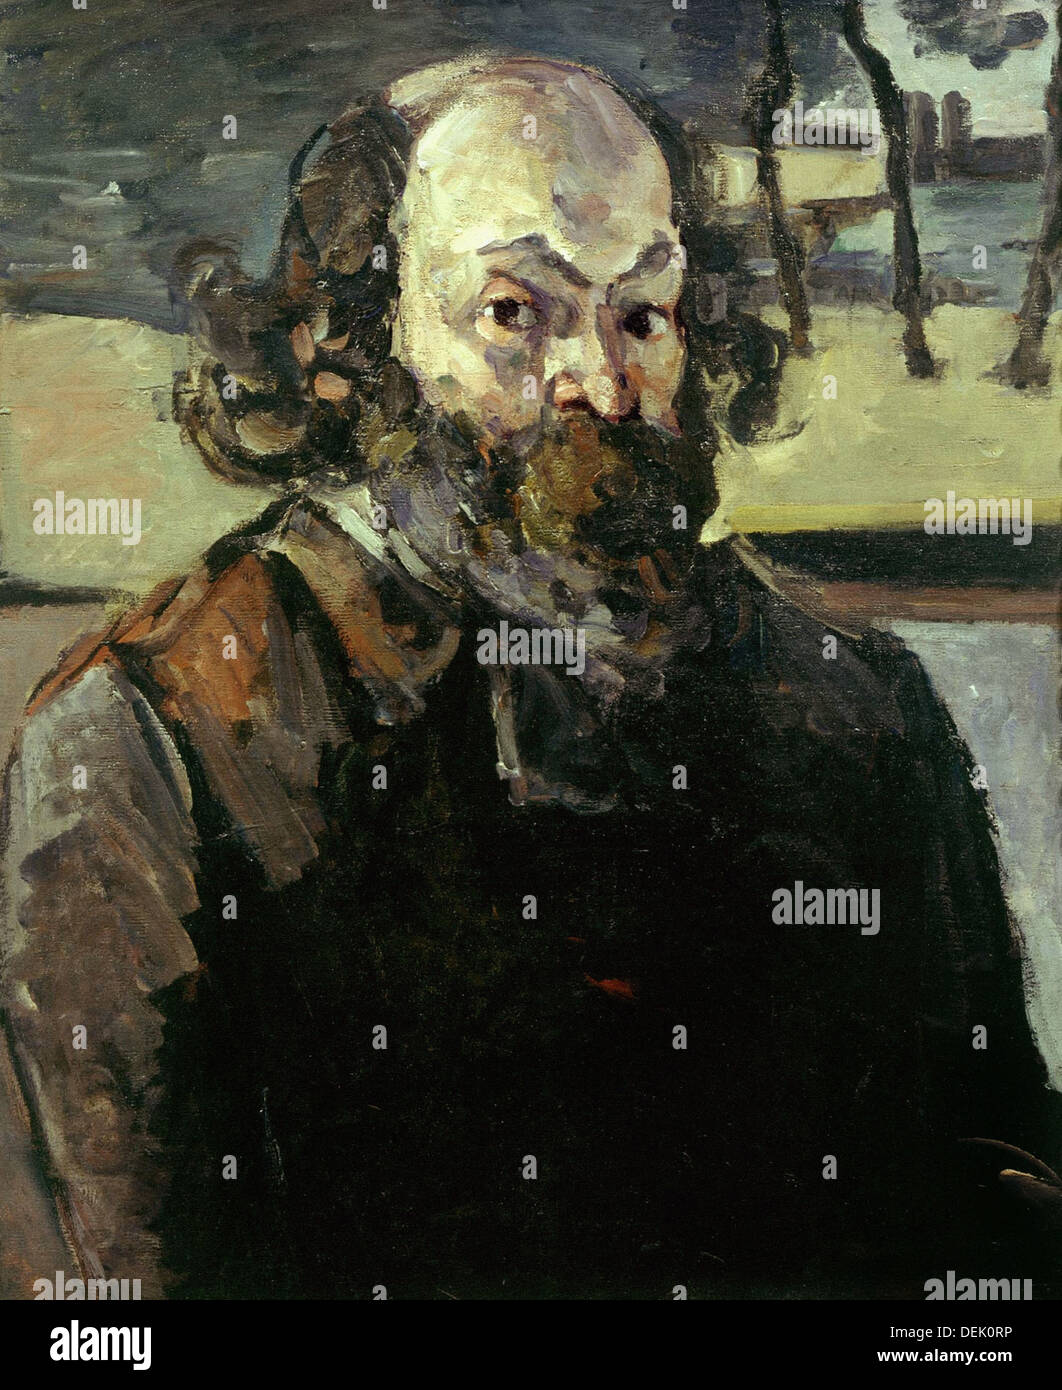 Paul Cézanne - Self Portrait - 1873 - Orsay Museum - Paris Stock Photo